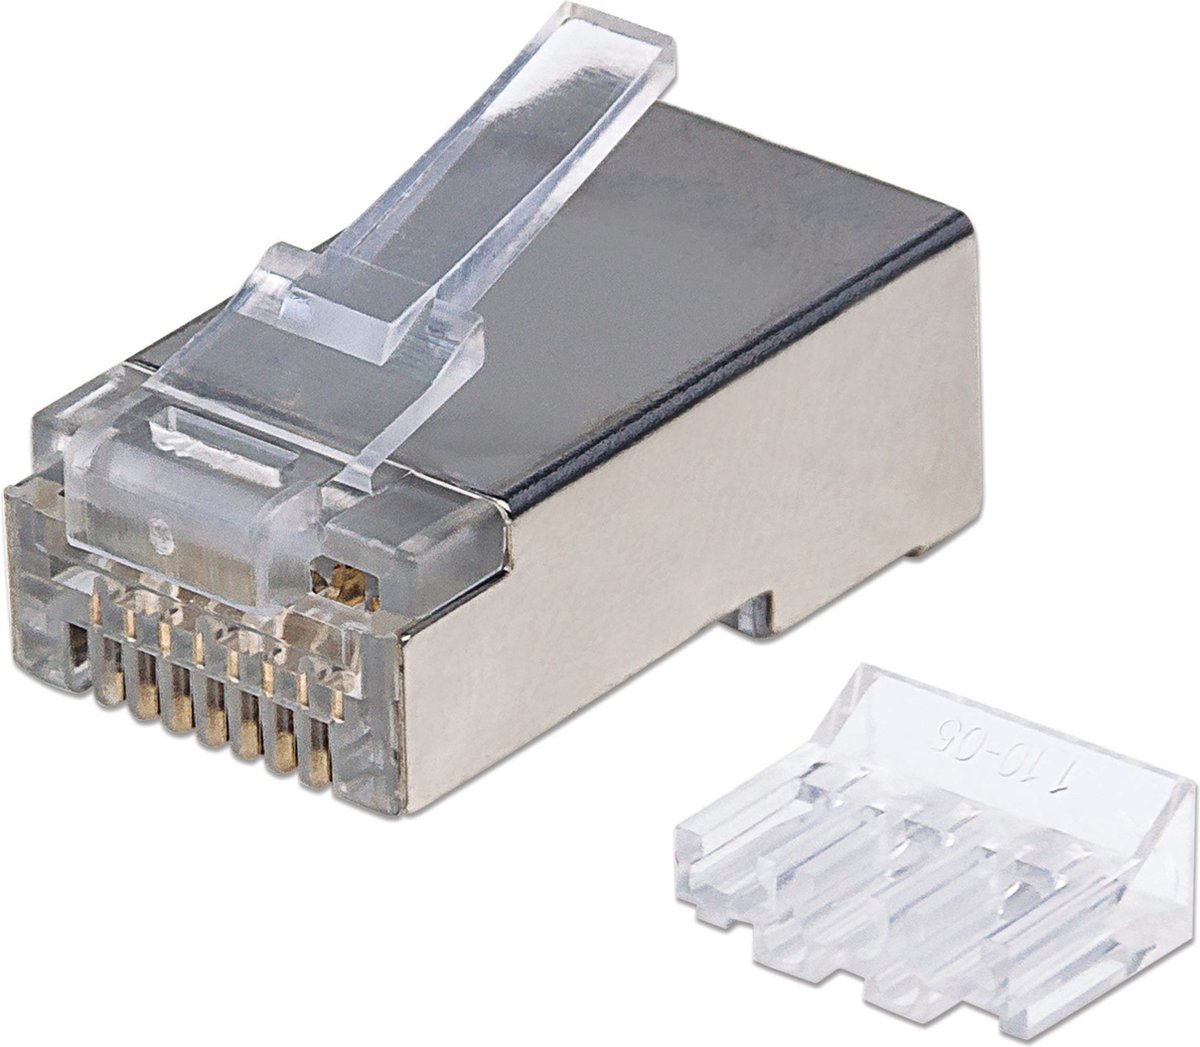 Intellinet 790505 Intellinet 70 stuks Cat6A RJ45 modulaire stekker Pro Line STP 3-punts ader koppeling voor gevlochten